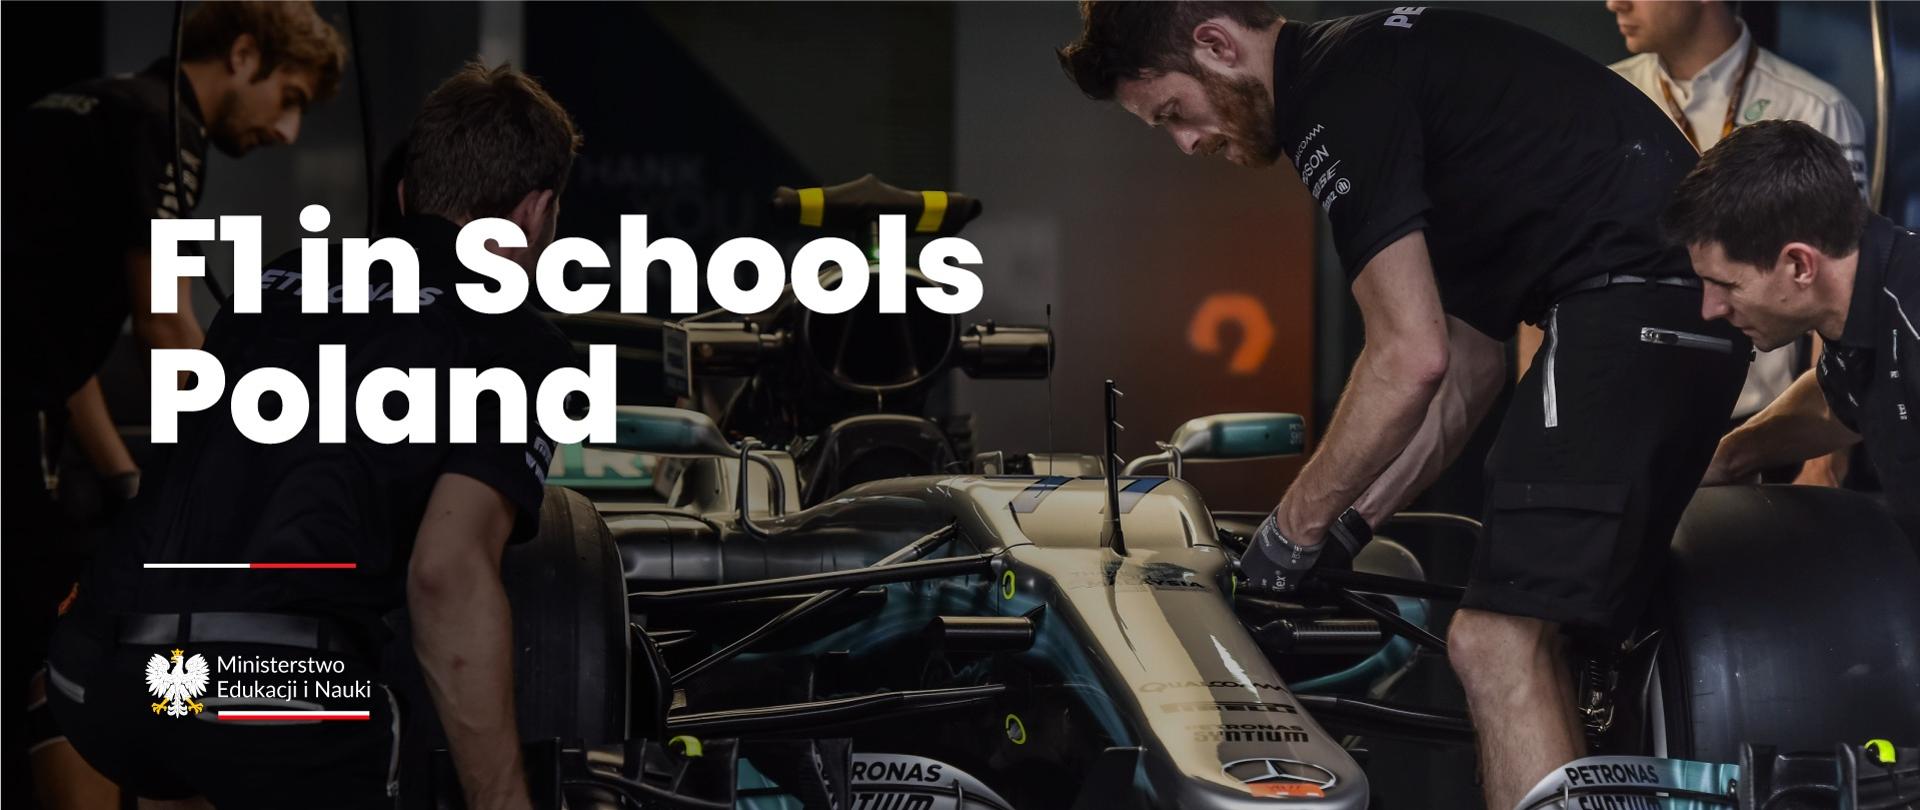 Bolid formuły 1, a przy nim pracujący mężczyźni oraz napis F1 in Schools Poland